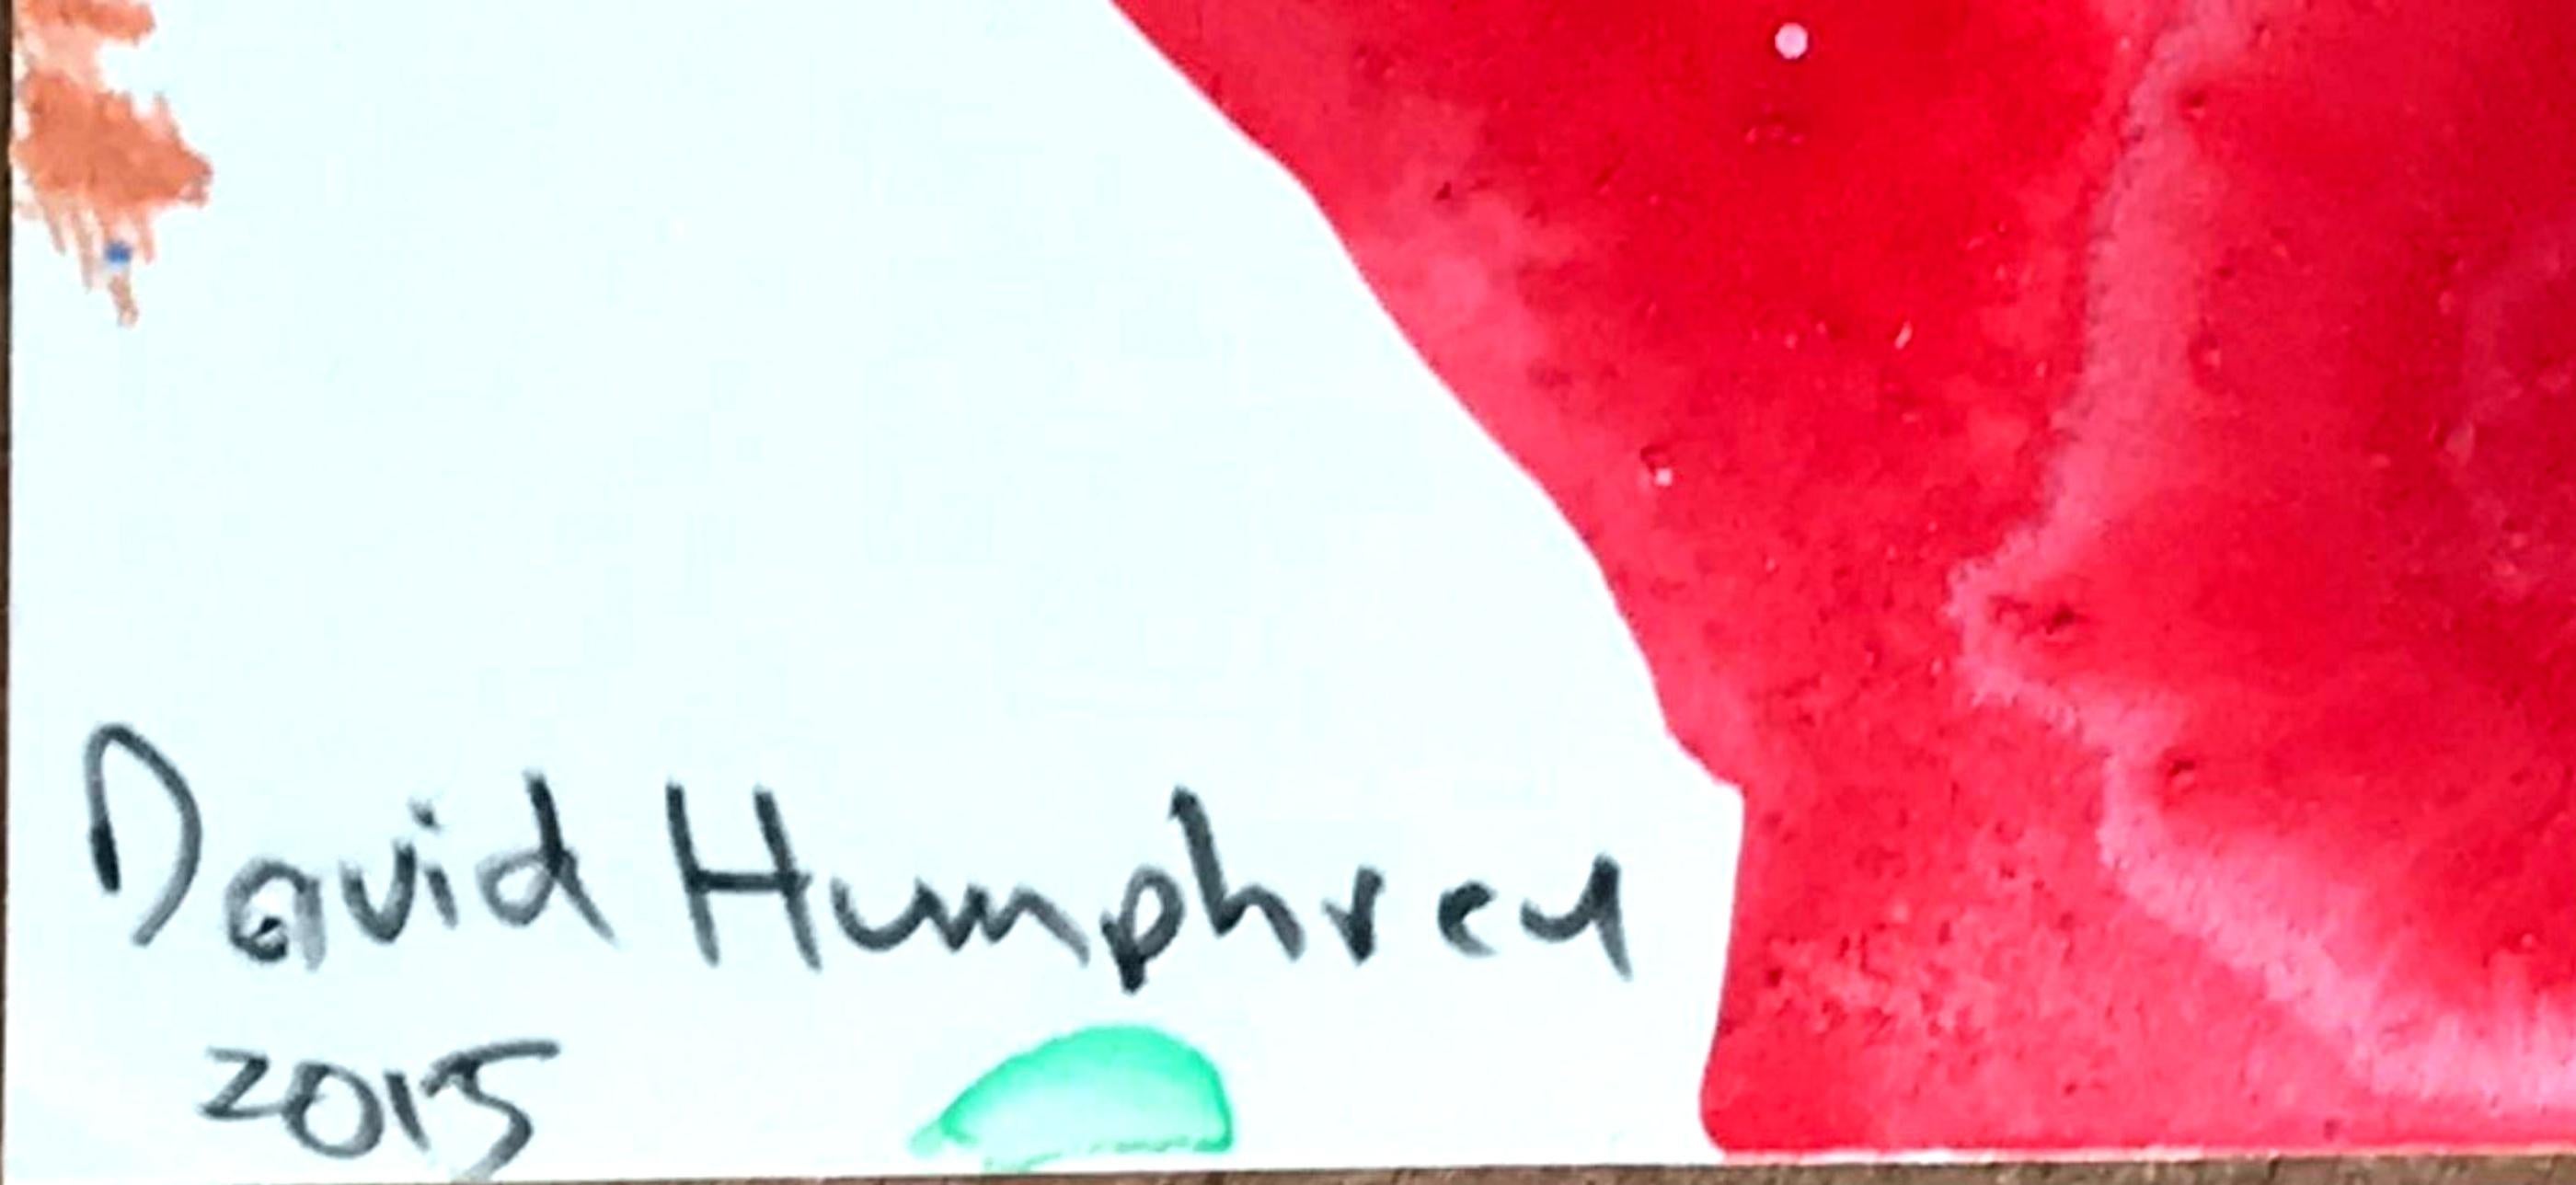 Œuvre expressionniste abstraite sans titre sur papier - Painting de David Humphrey